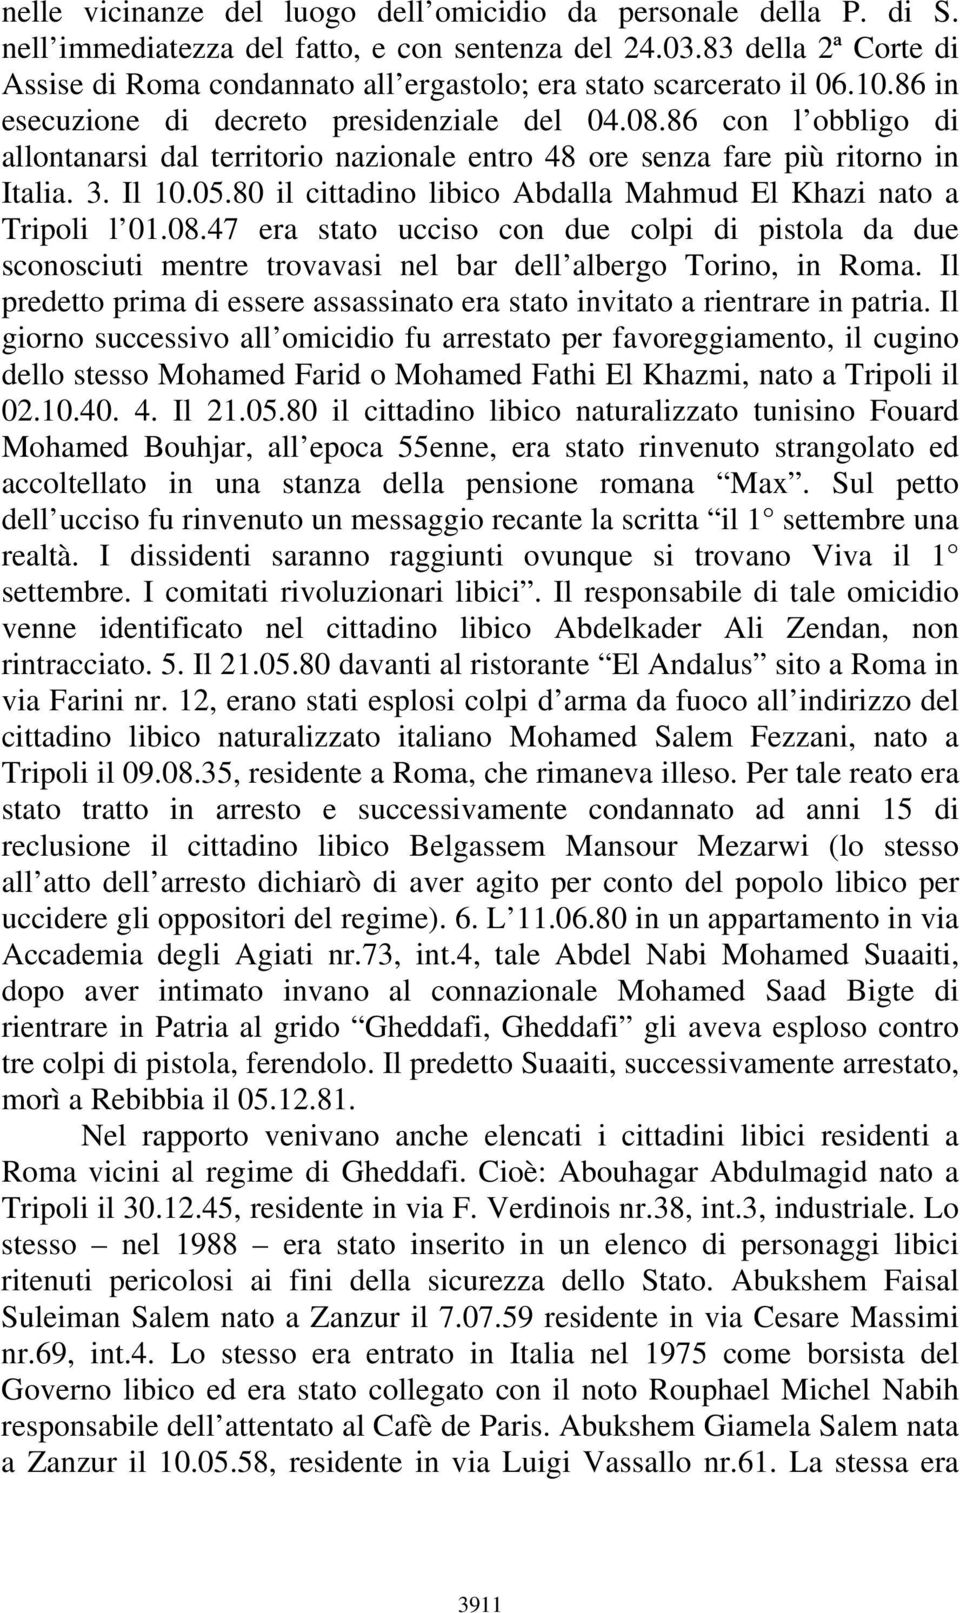 86 con l obbligo di allontanarsi dal territorio nazionale entro 48 ore senza fare più ritorno in Italia. 3. Il 10.05.80 il cittadino libico Abdalla Mahmud El Khazi nato a Tripoli l 01.08.